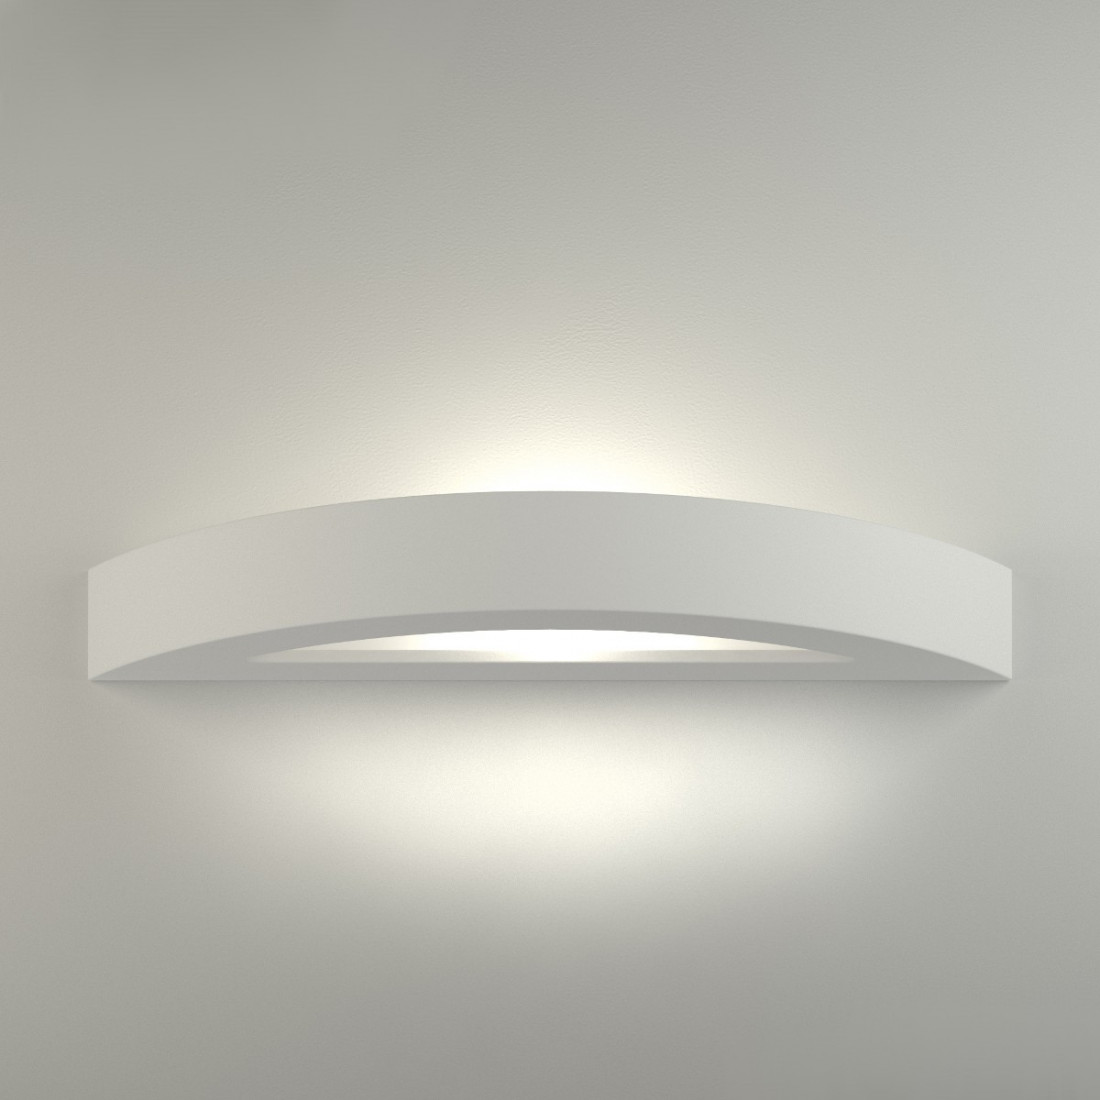 Applique BF-8144 41 E27 42cm gesso bianco verniciabile biemissione lampada parete fascia interno IP20